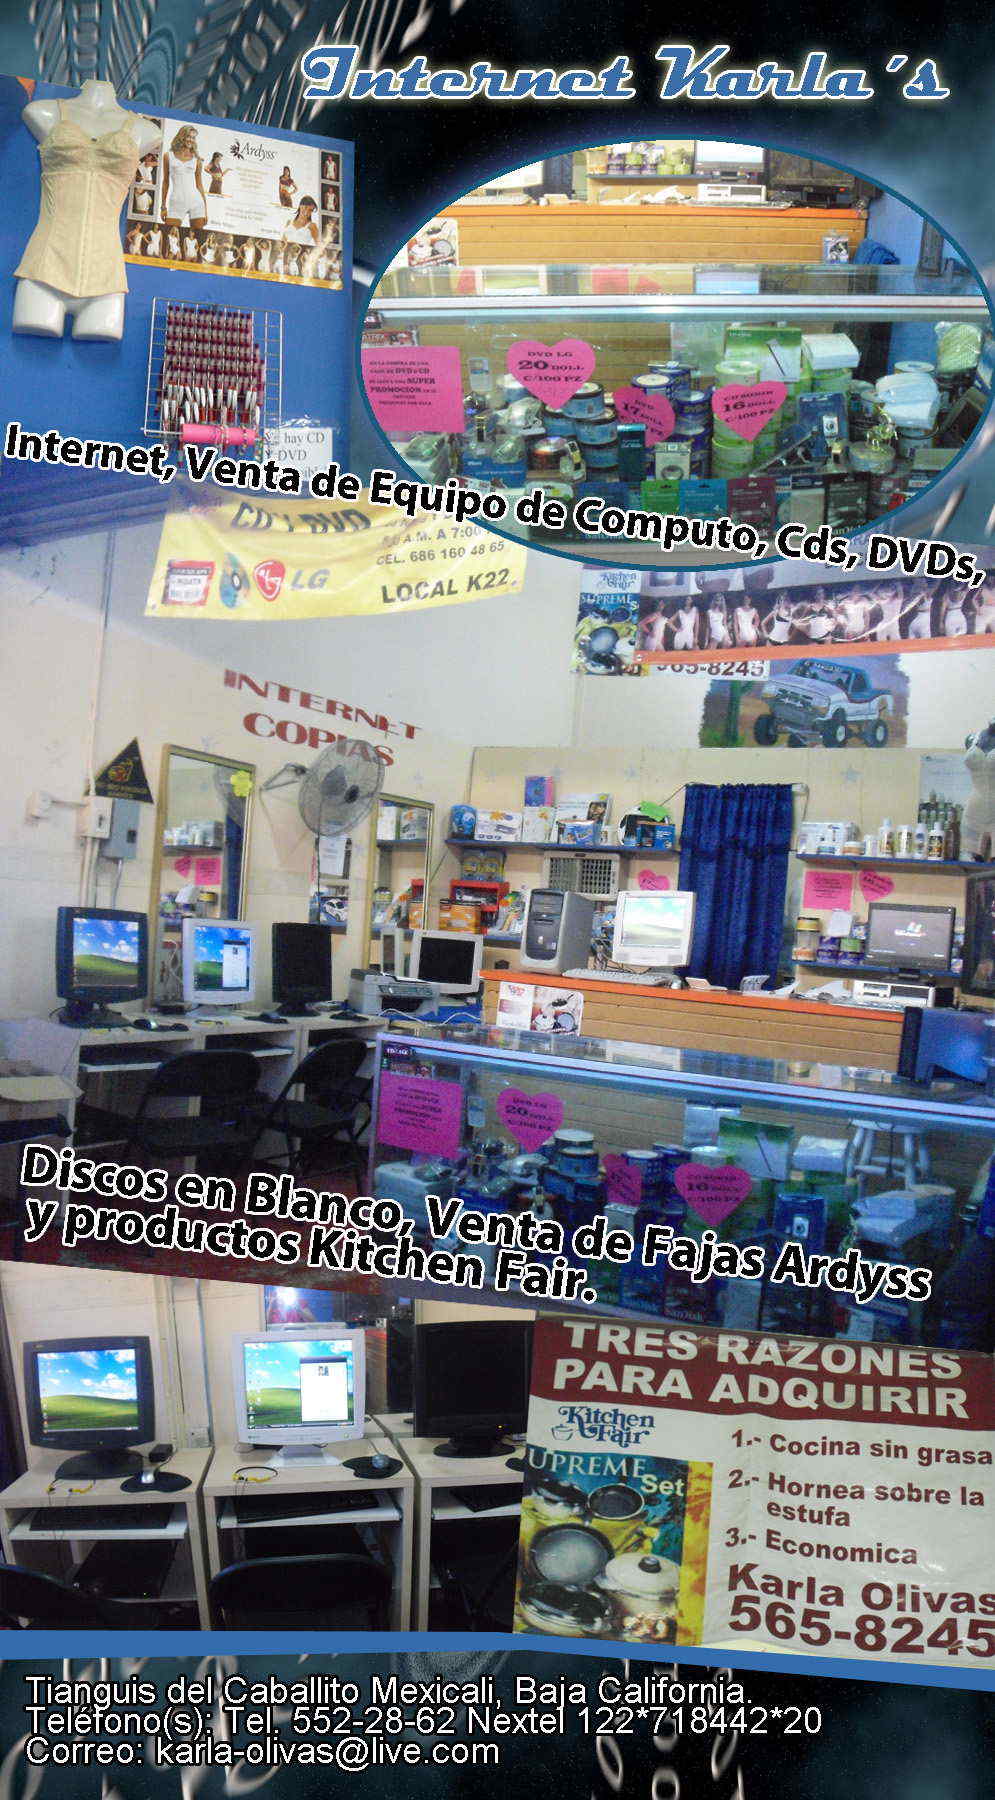 Internet Karla´s-Internet, Venta de Equipo de Computo, Cds, DVDs, Discos en Blanco, Venta de Fajas Ardyss y productos Kitchen Fair.        